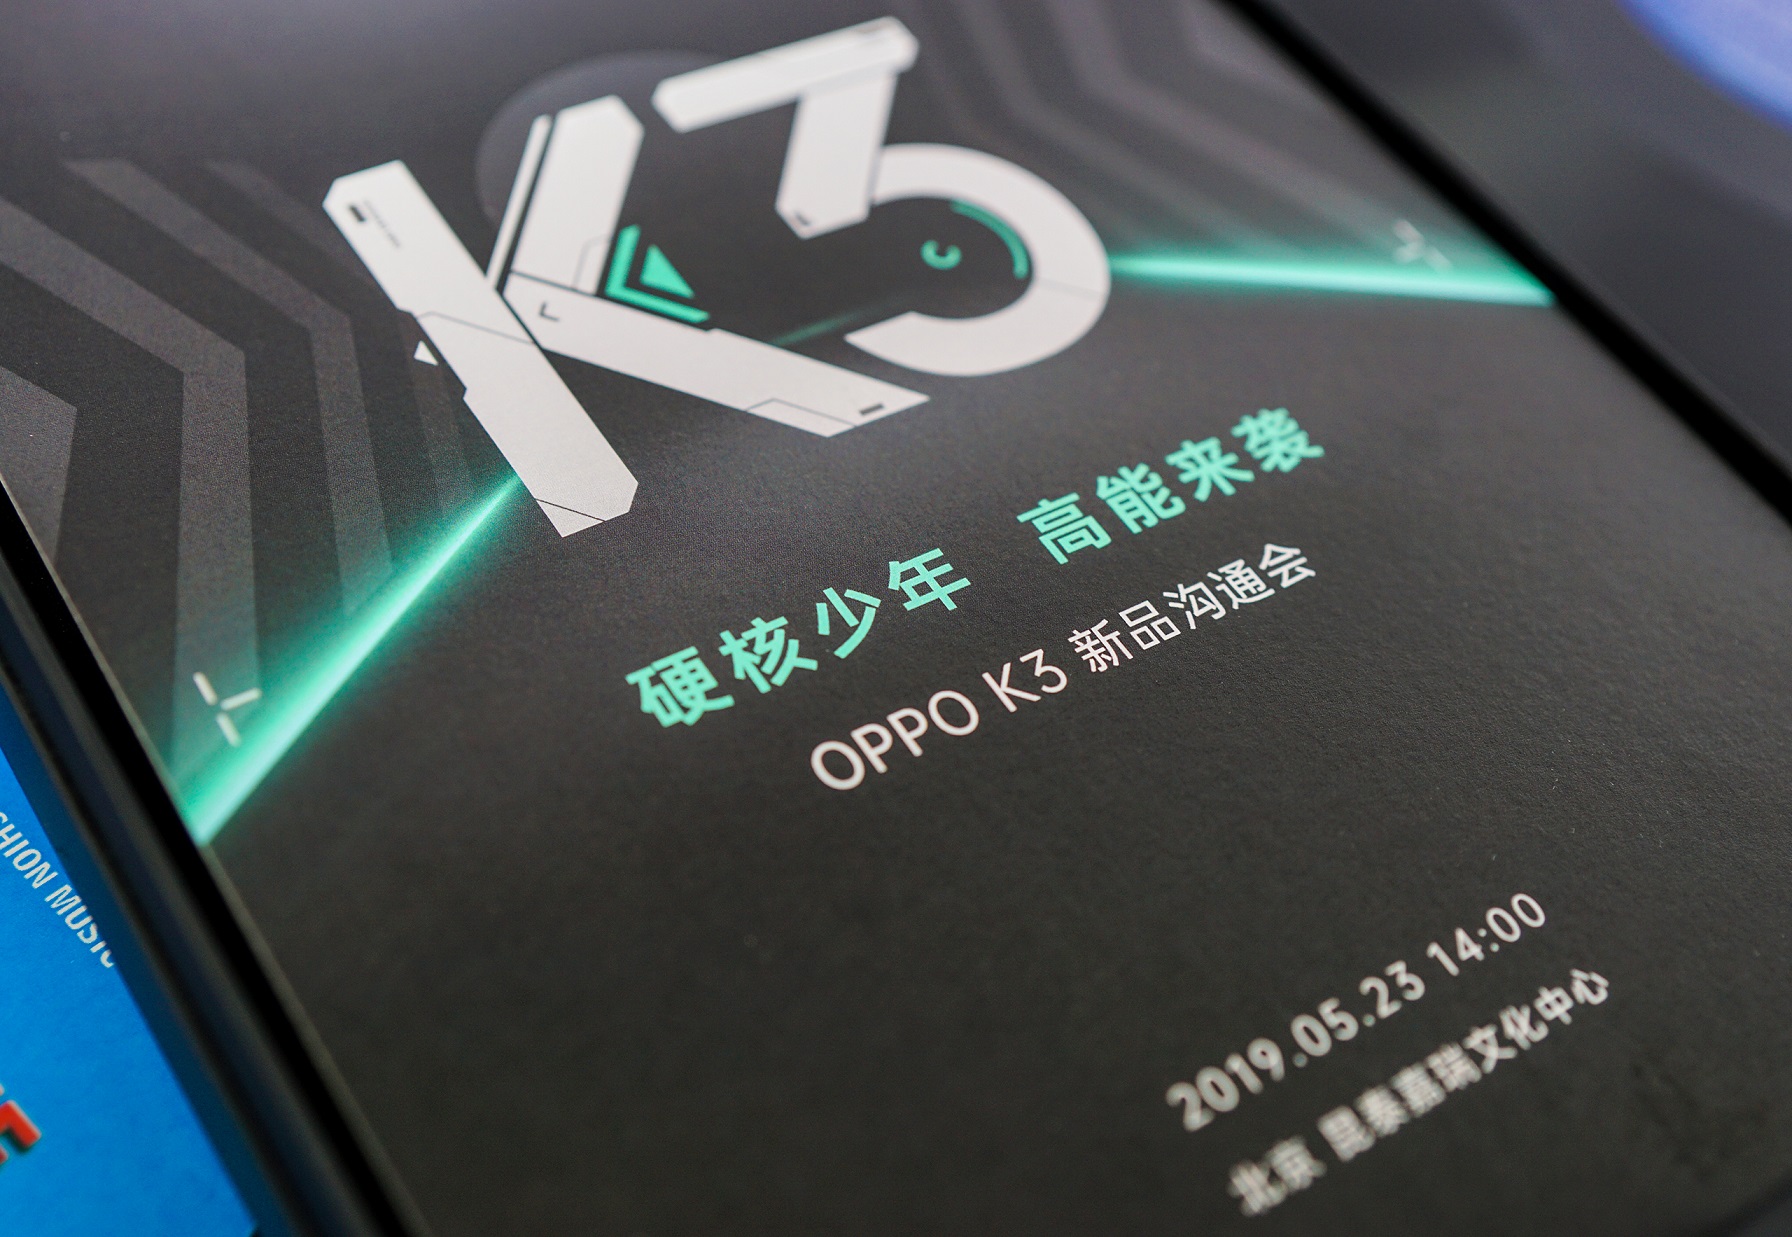  OPPO K3手机新品沟通会将于5月23日下午2点在北京召开(5)